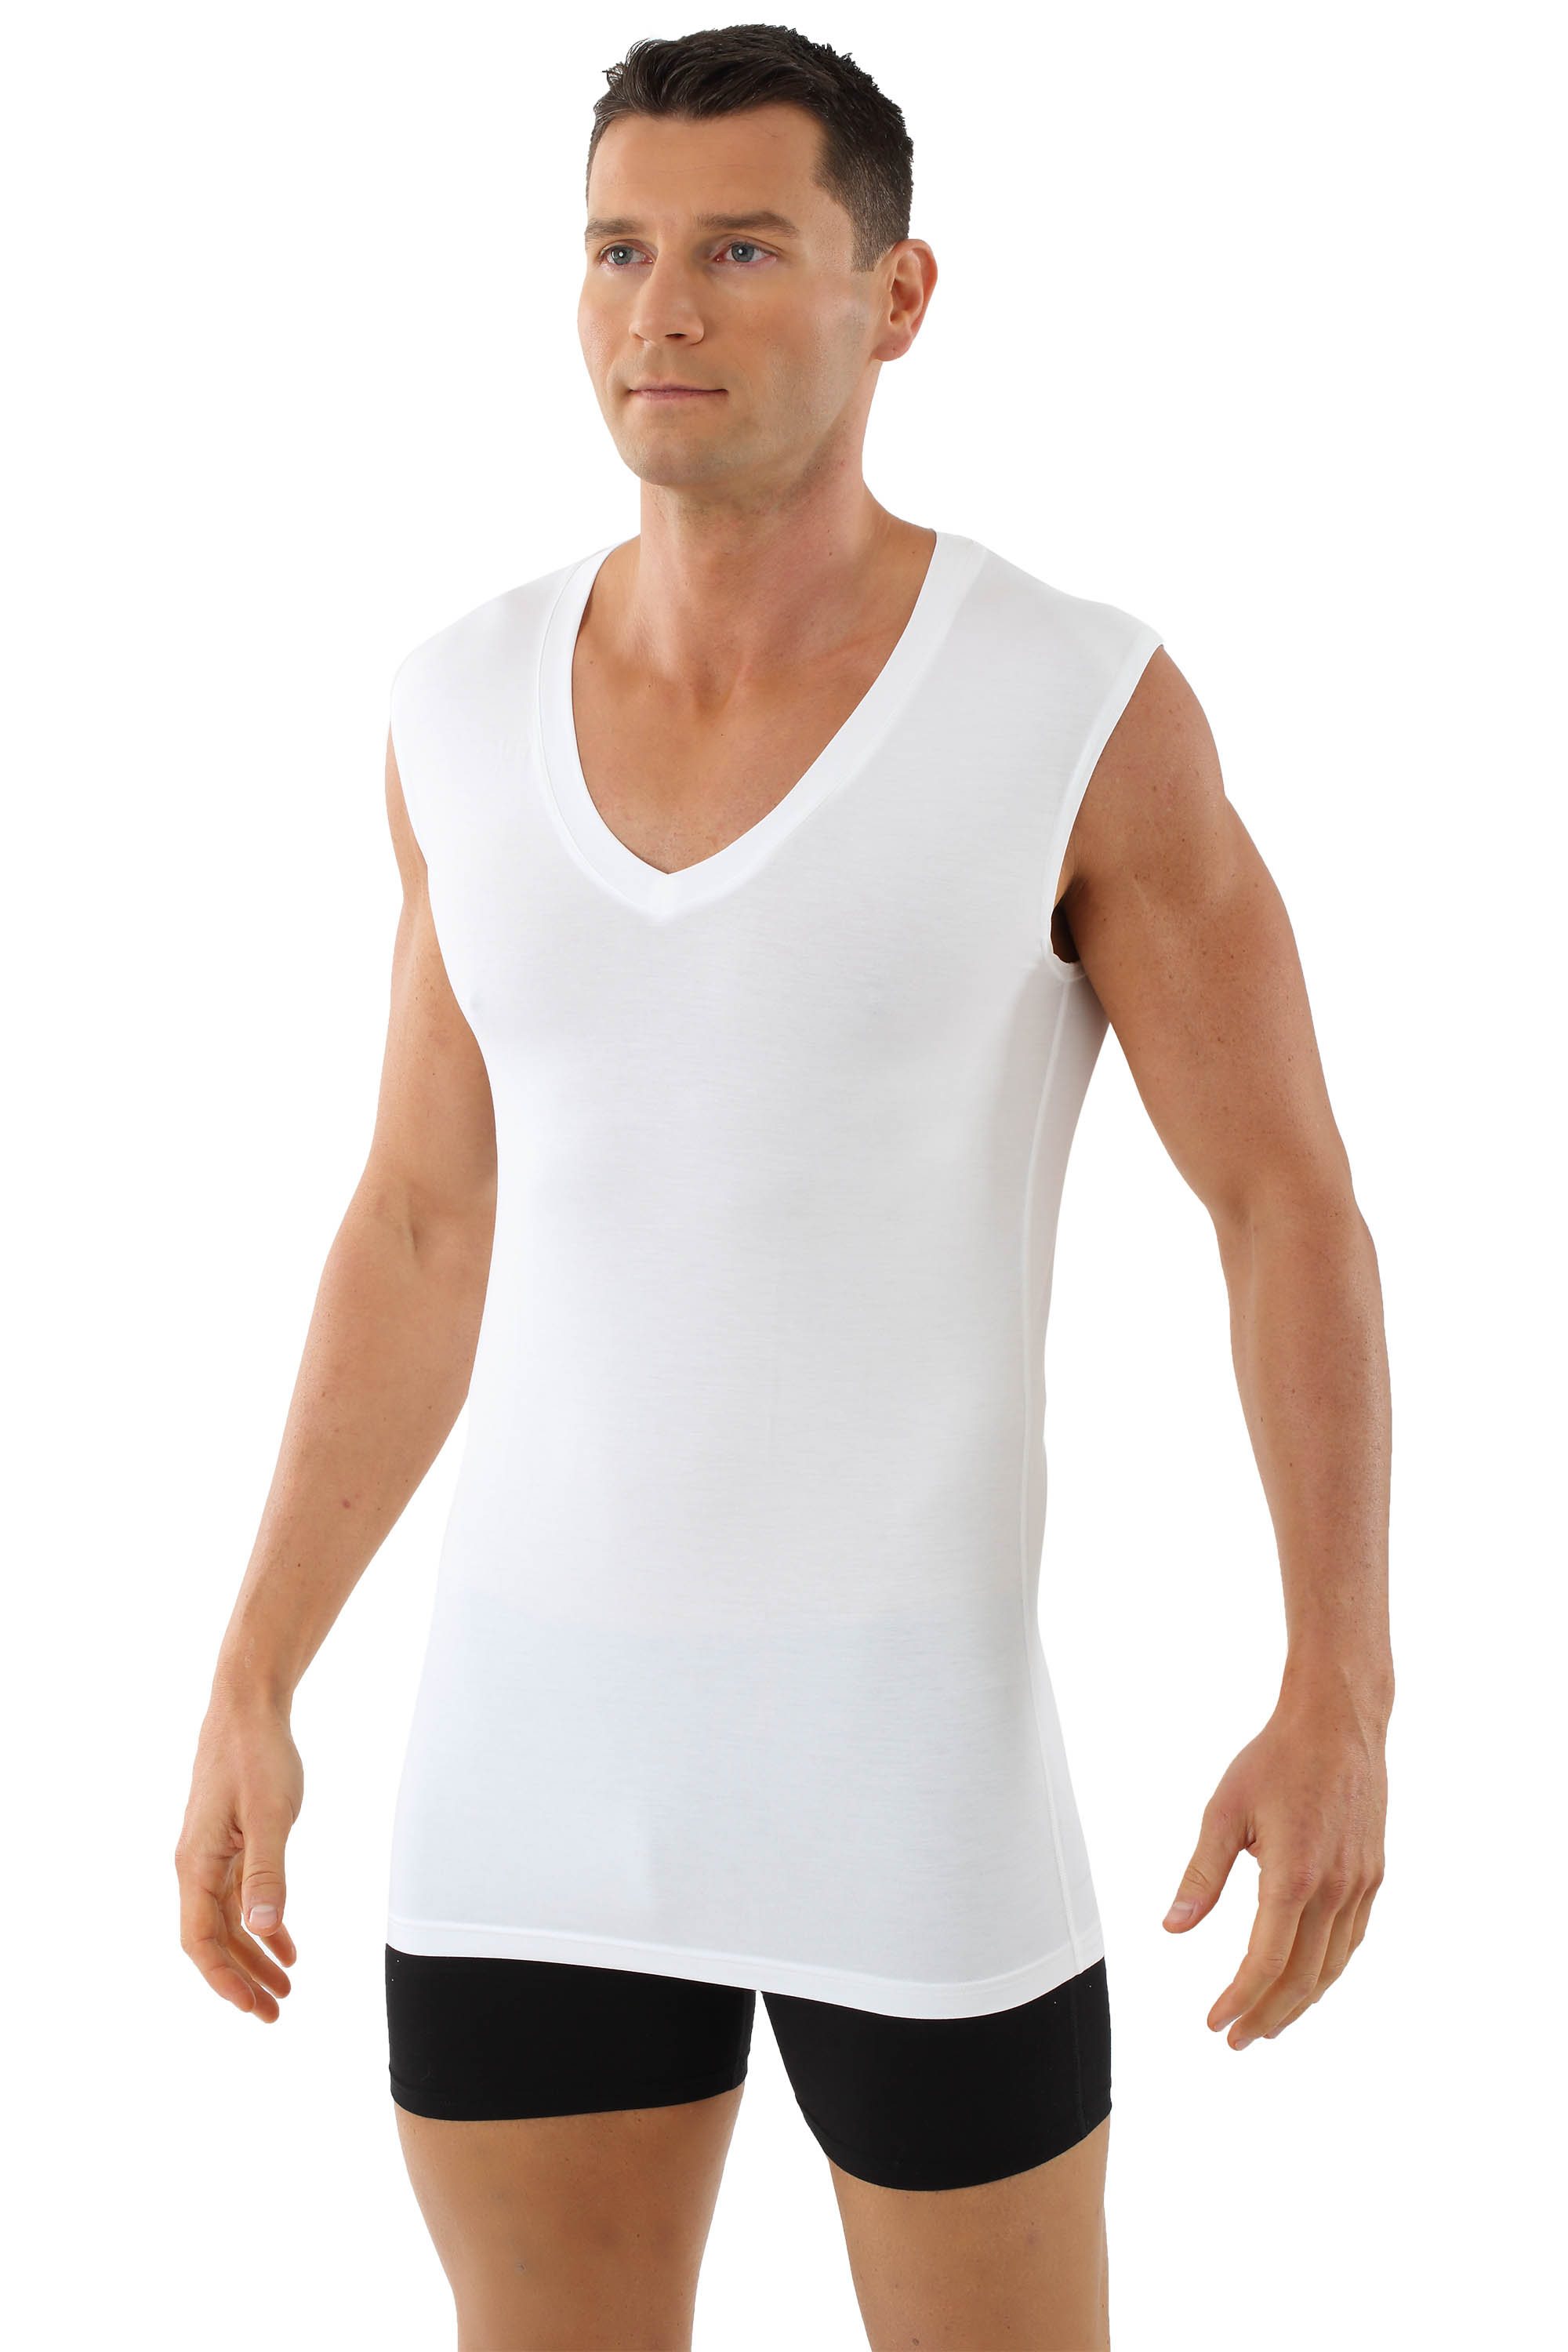 men's v neck slim fit undershirts